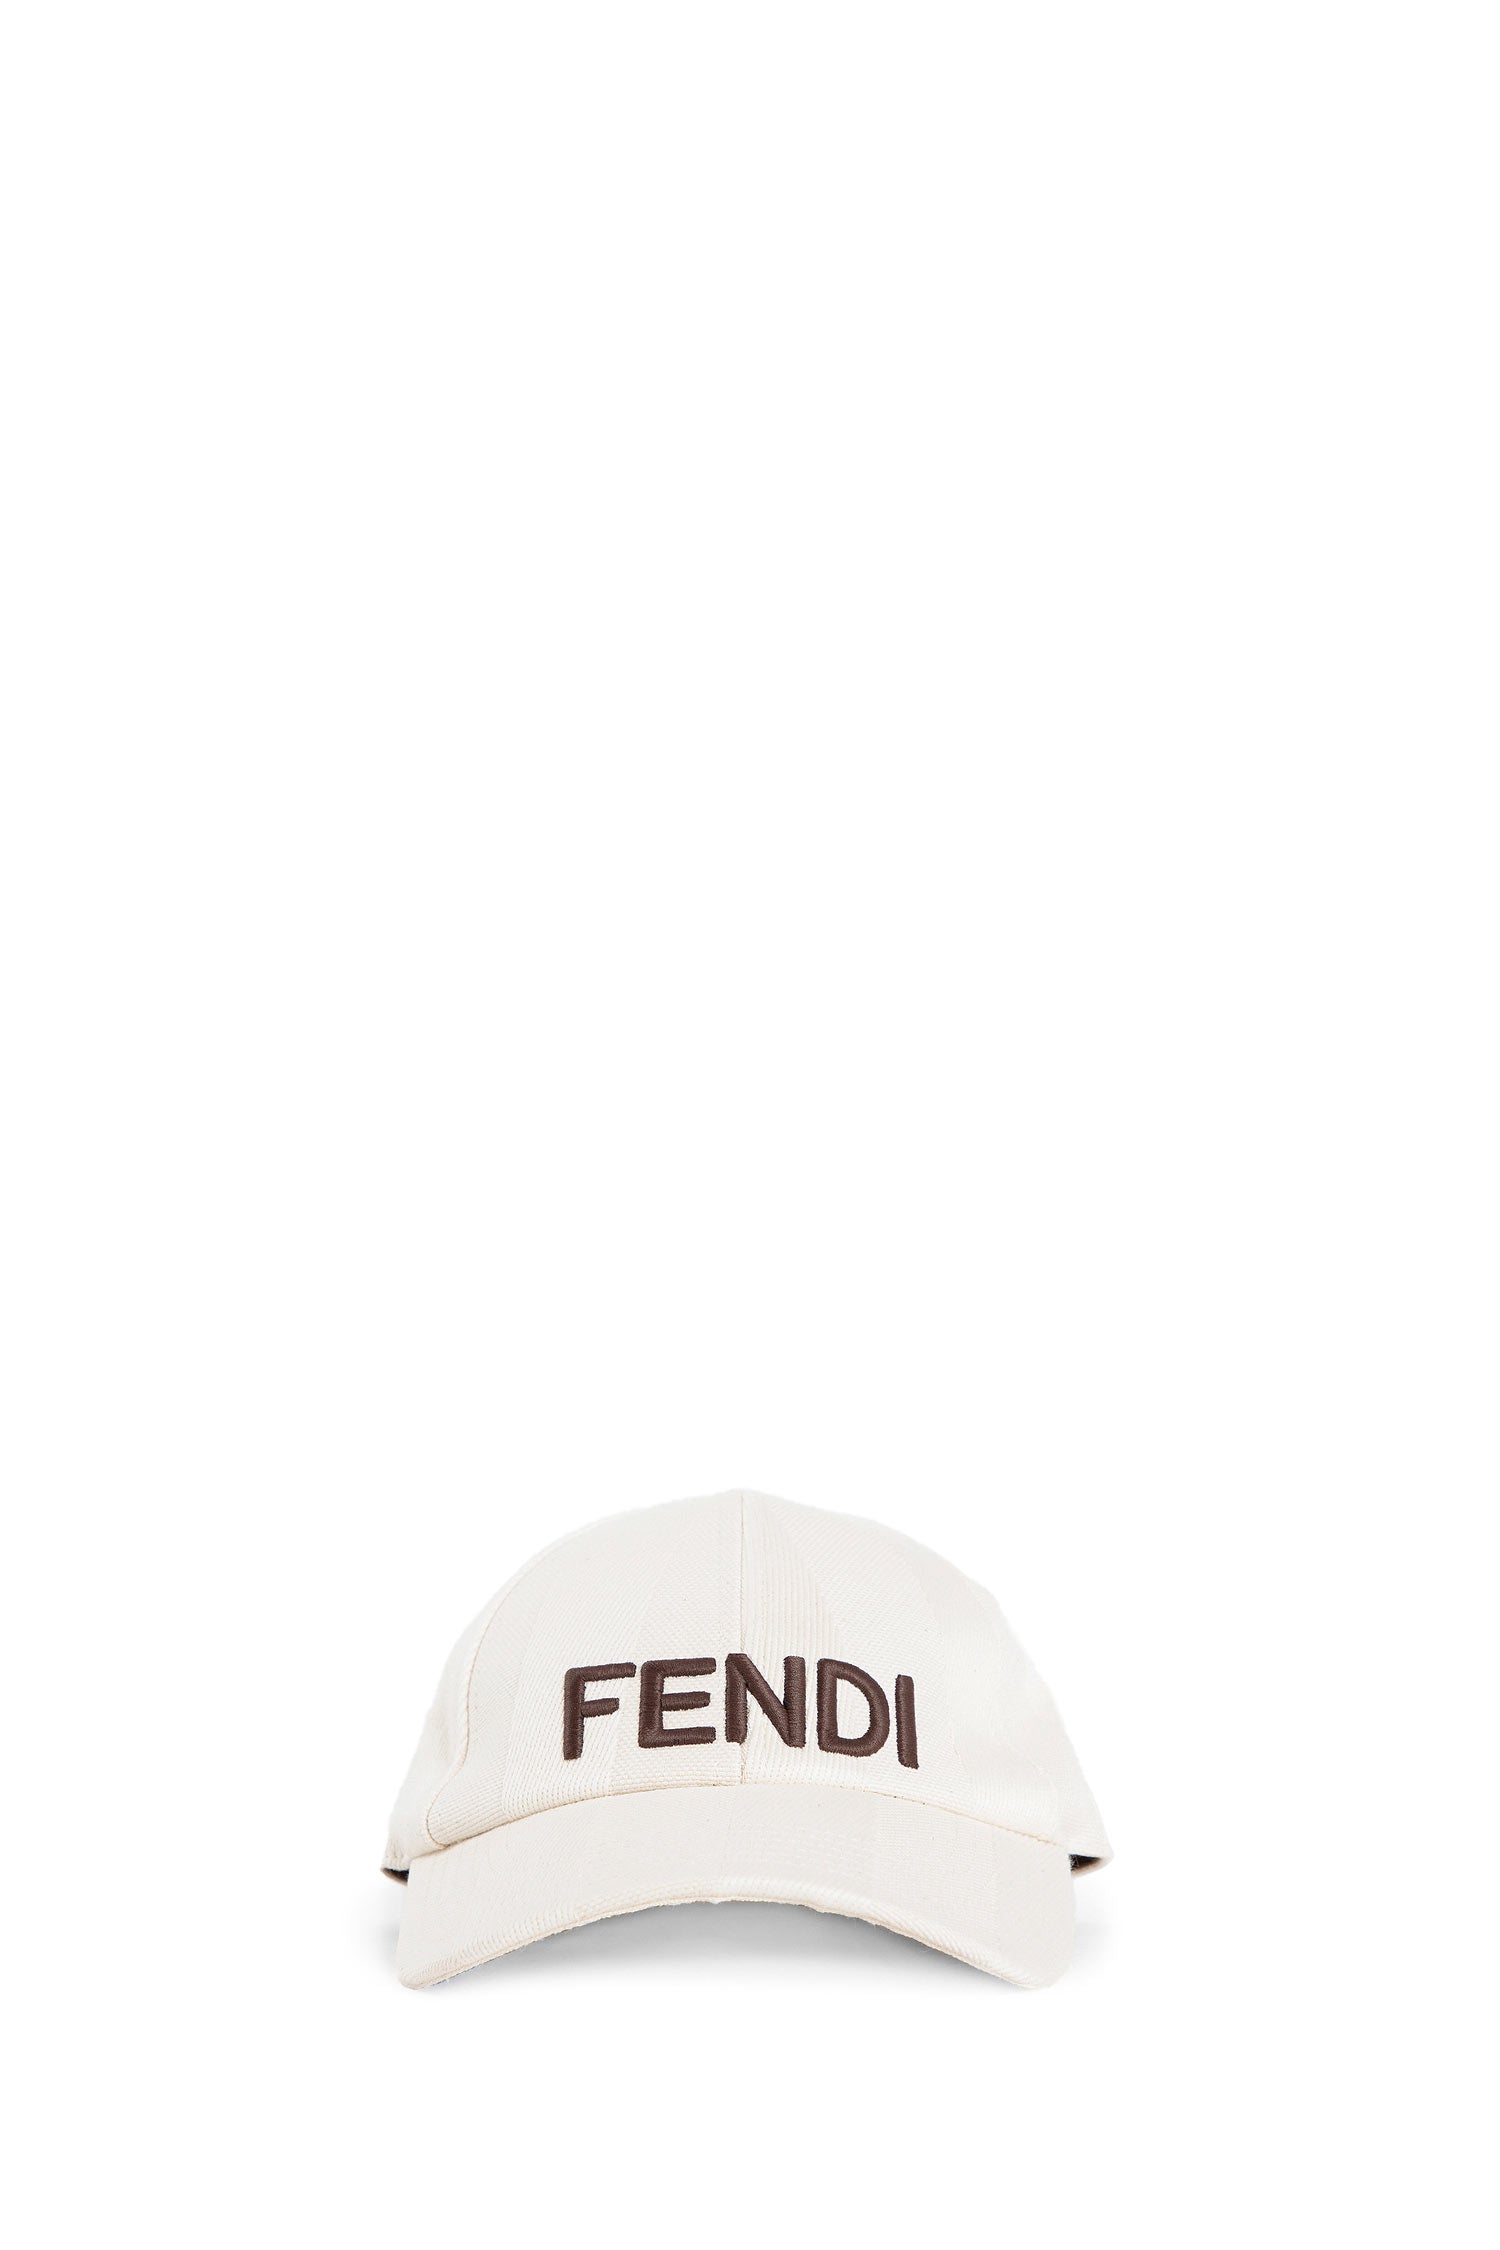 FENDI WOMAN BEIGE HATS